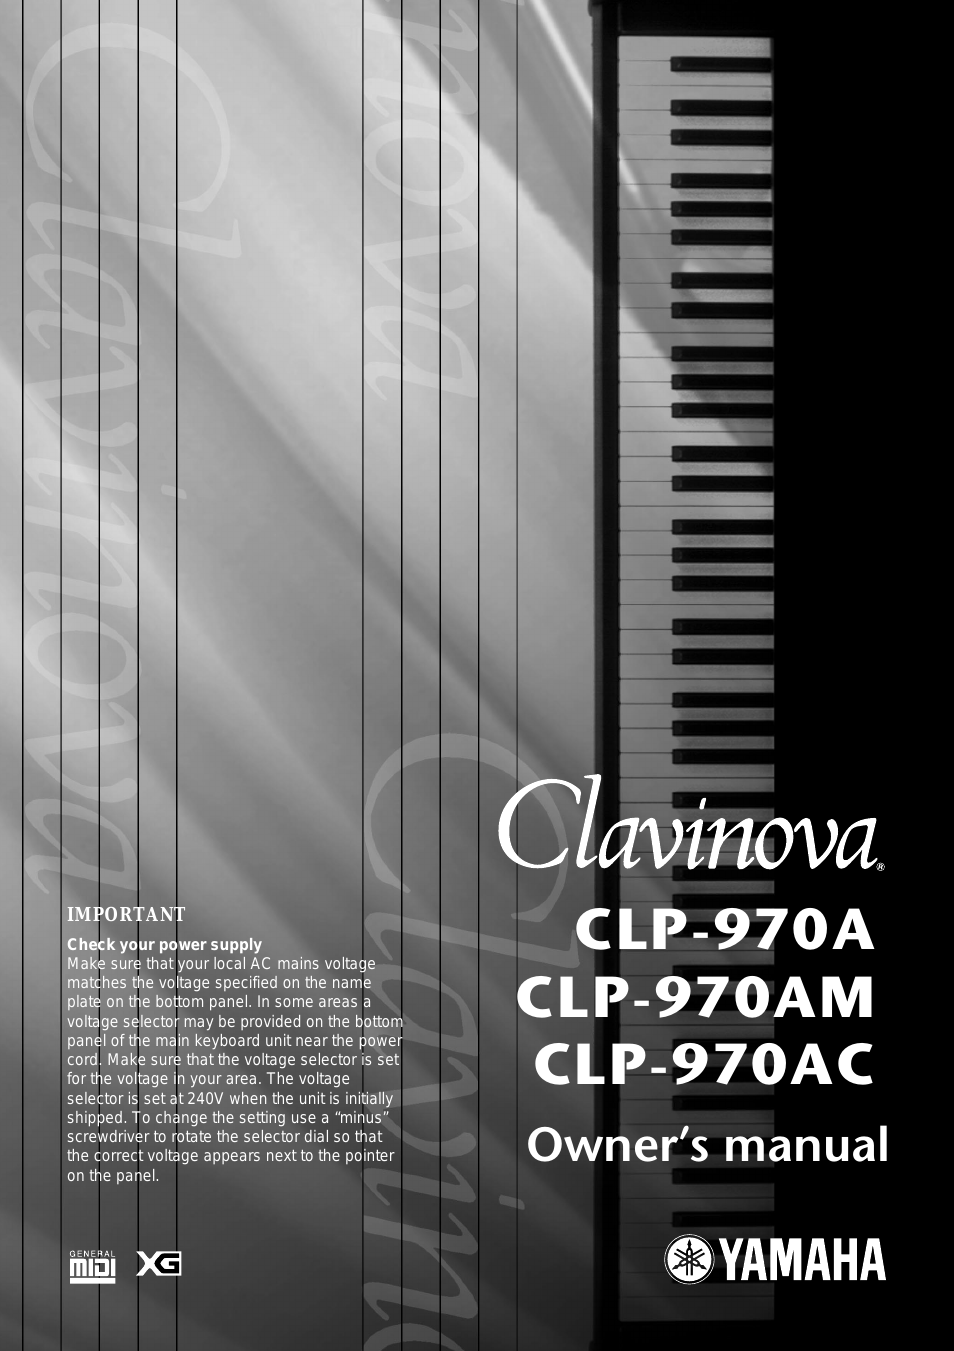 CLP-970AM